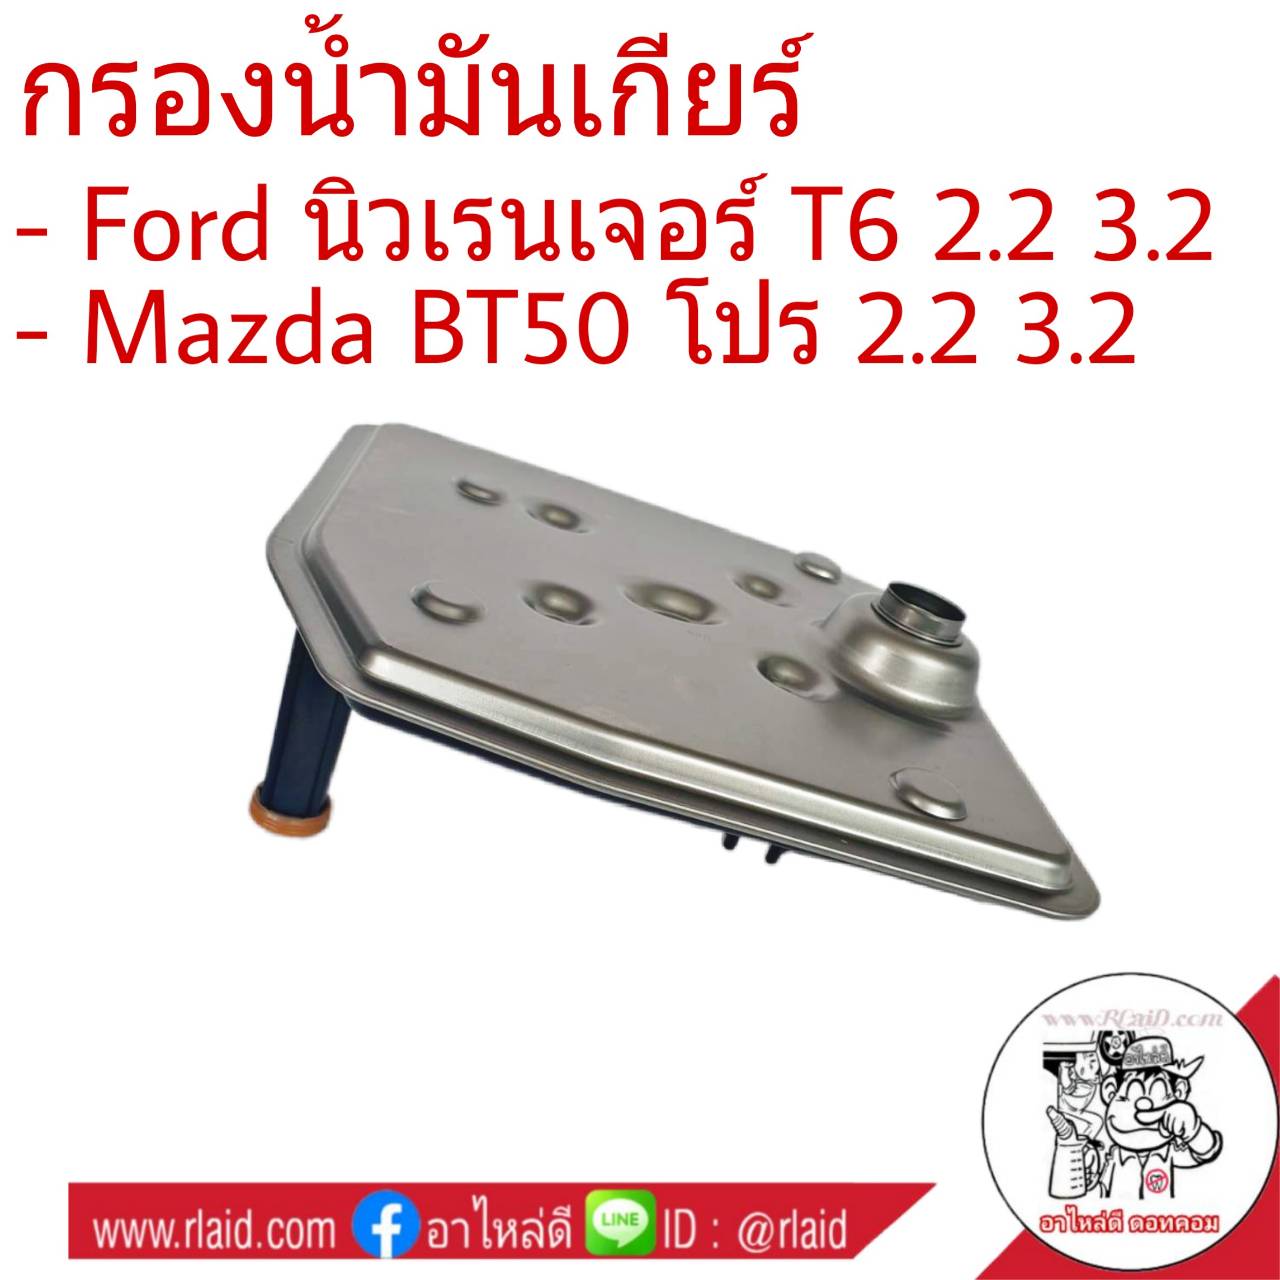 กรองเกียร์ Ford นิวเรนเจอร์ T6 2.2-3.2 , MAZDA BT50 โปร 2.2-3.2 กรองน้ำมันเกียร์ *คอเตี้ย รหัส 1513006 (จำนวน 1ชิ้น)